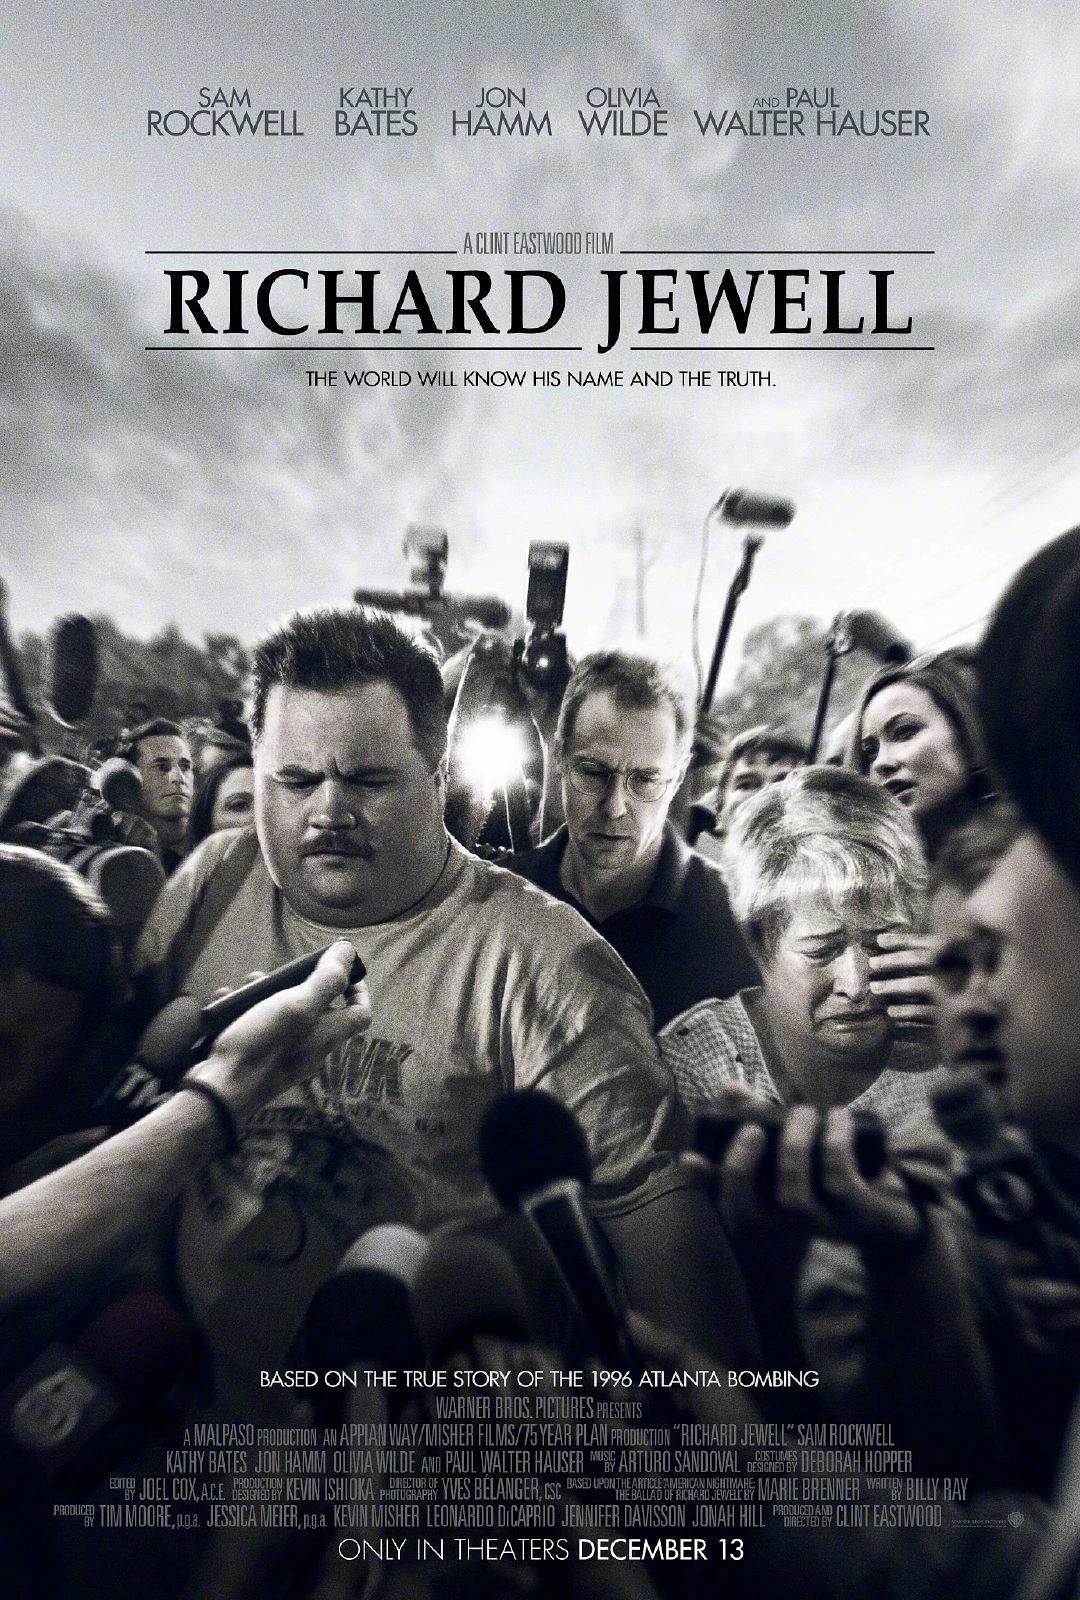 理查德·朱维尔的哀歌 蓝光原盘下载+高清MKV版/李察朱维尔：惊世疑案(港)/李察朱威尔事件(台)/American Nightmare: The Ballad of Richard Jewell/American Nightmare/The Ballad of Richard Jewell/理查德·杰威尔的歌谣/理查德·朱维尔的歌谣/理查德·朱厄尔的歌谣/理查德·朱厄尔的悲歌/理查德·朱厄尔/美国噩梦 2019 39.4G